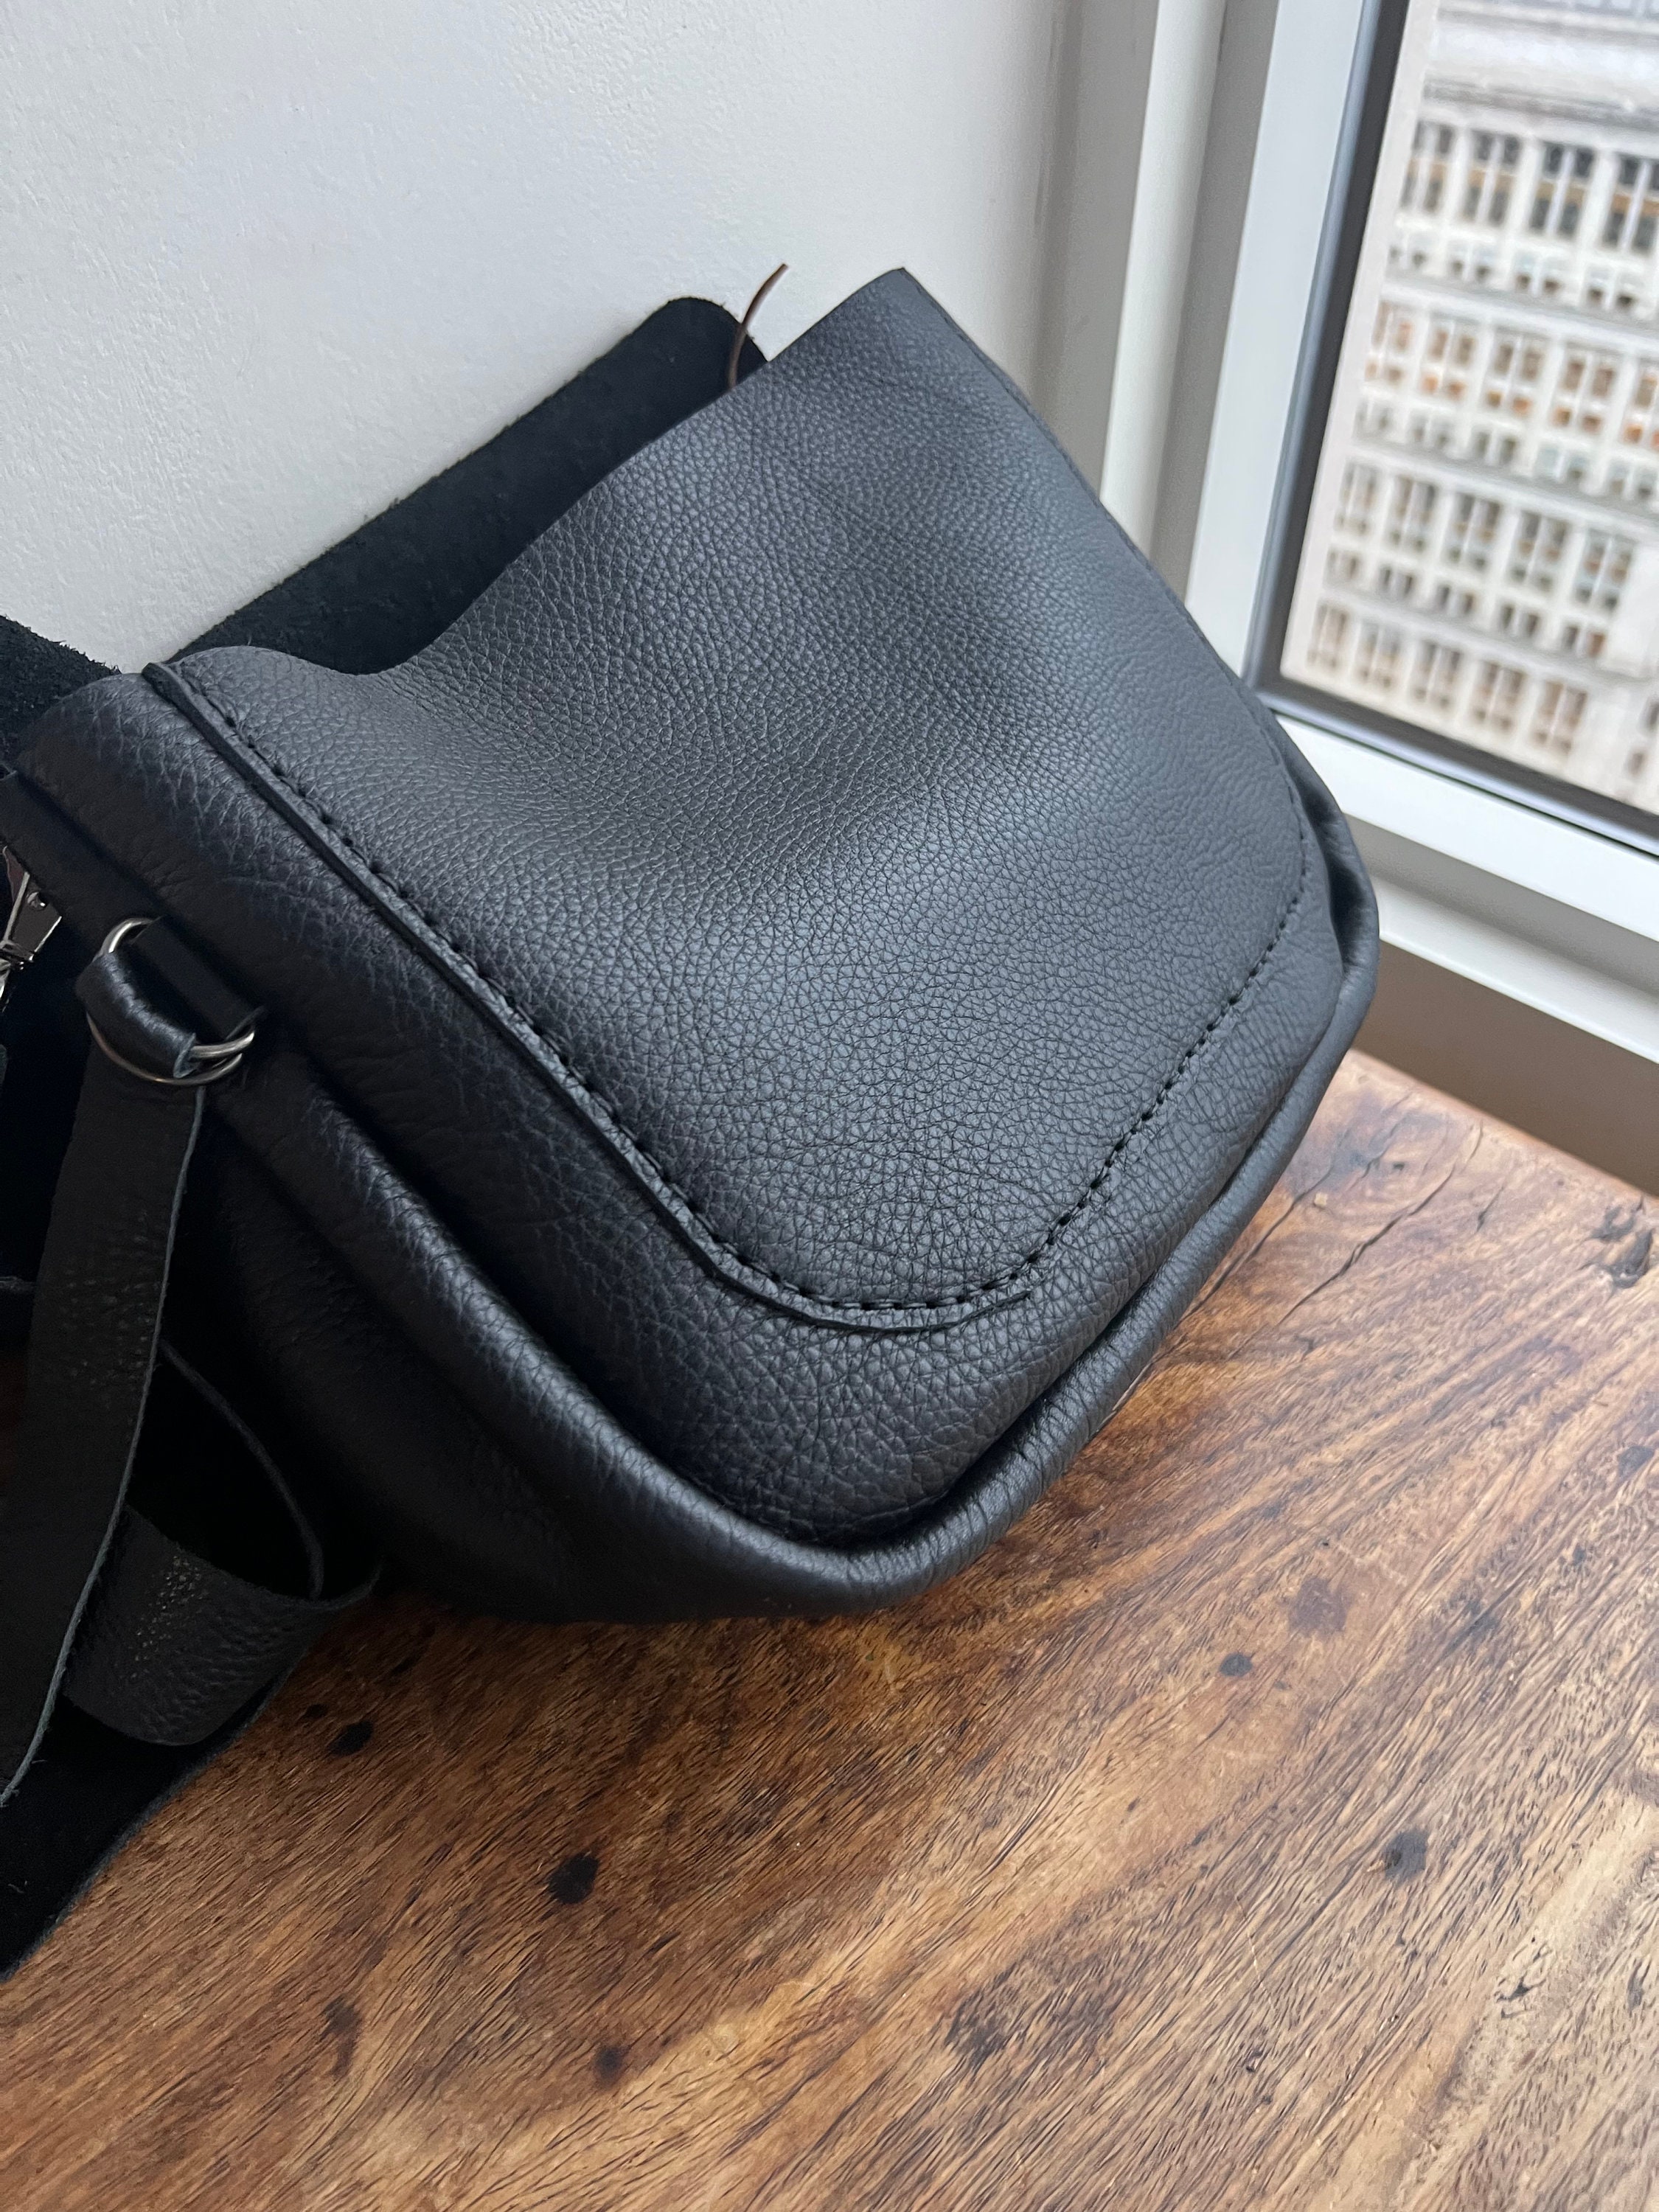 Leather bucket bag / Black leather crossbody bag / Soft leather handbag /  Black Bison / Made in America